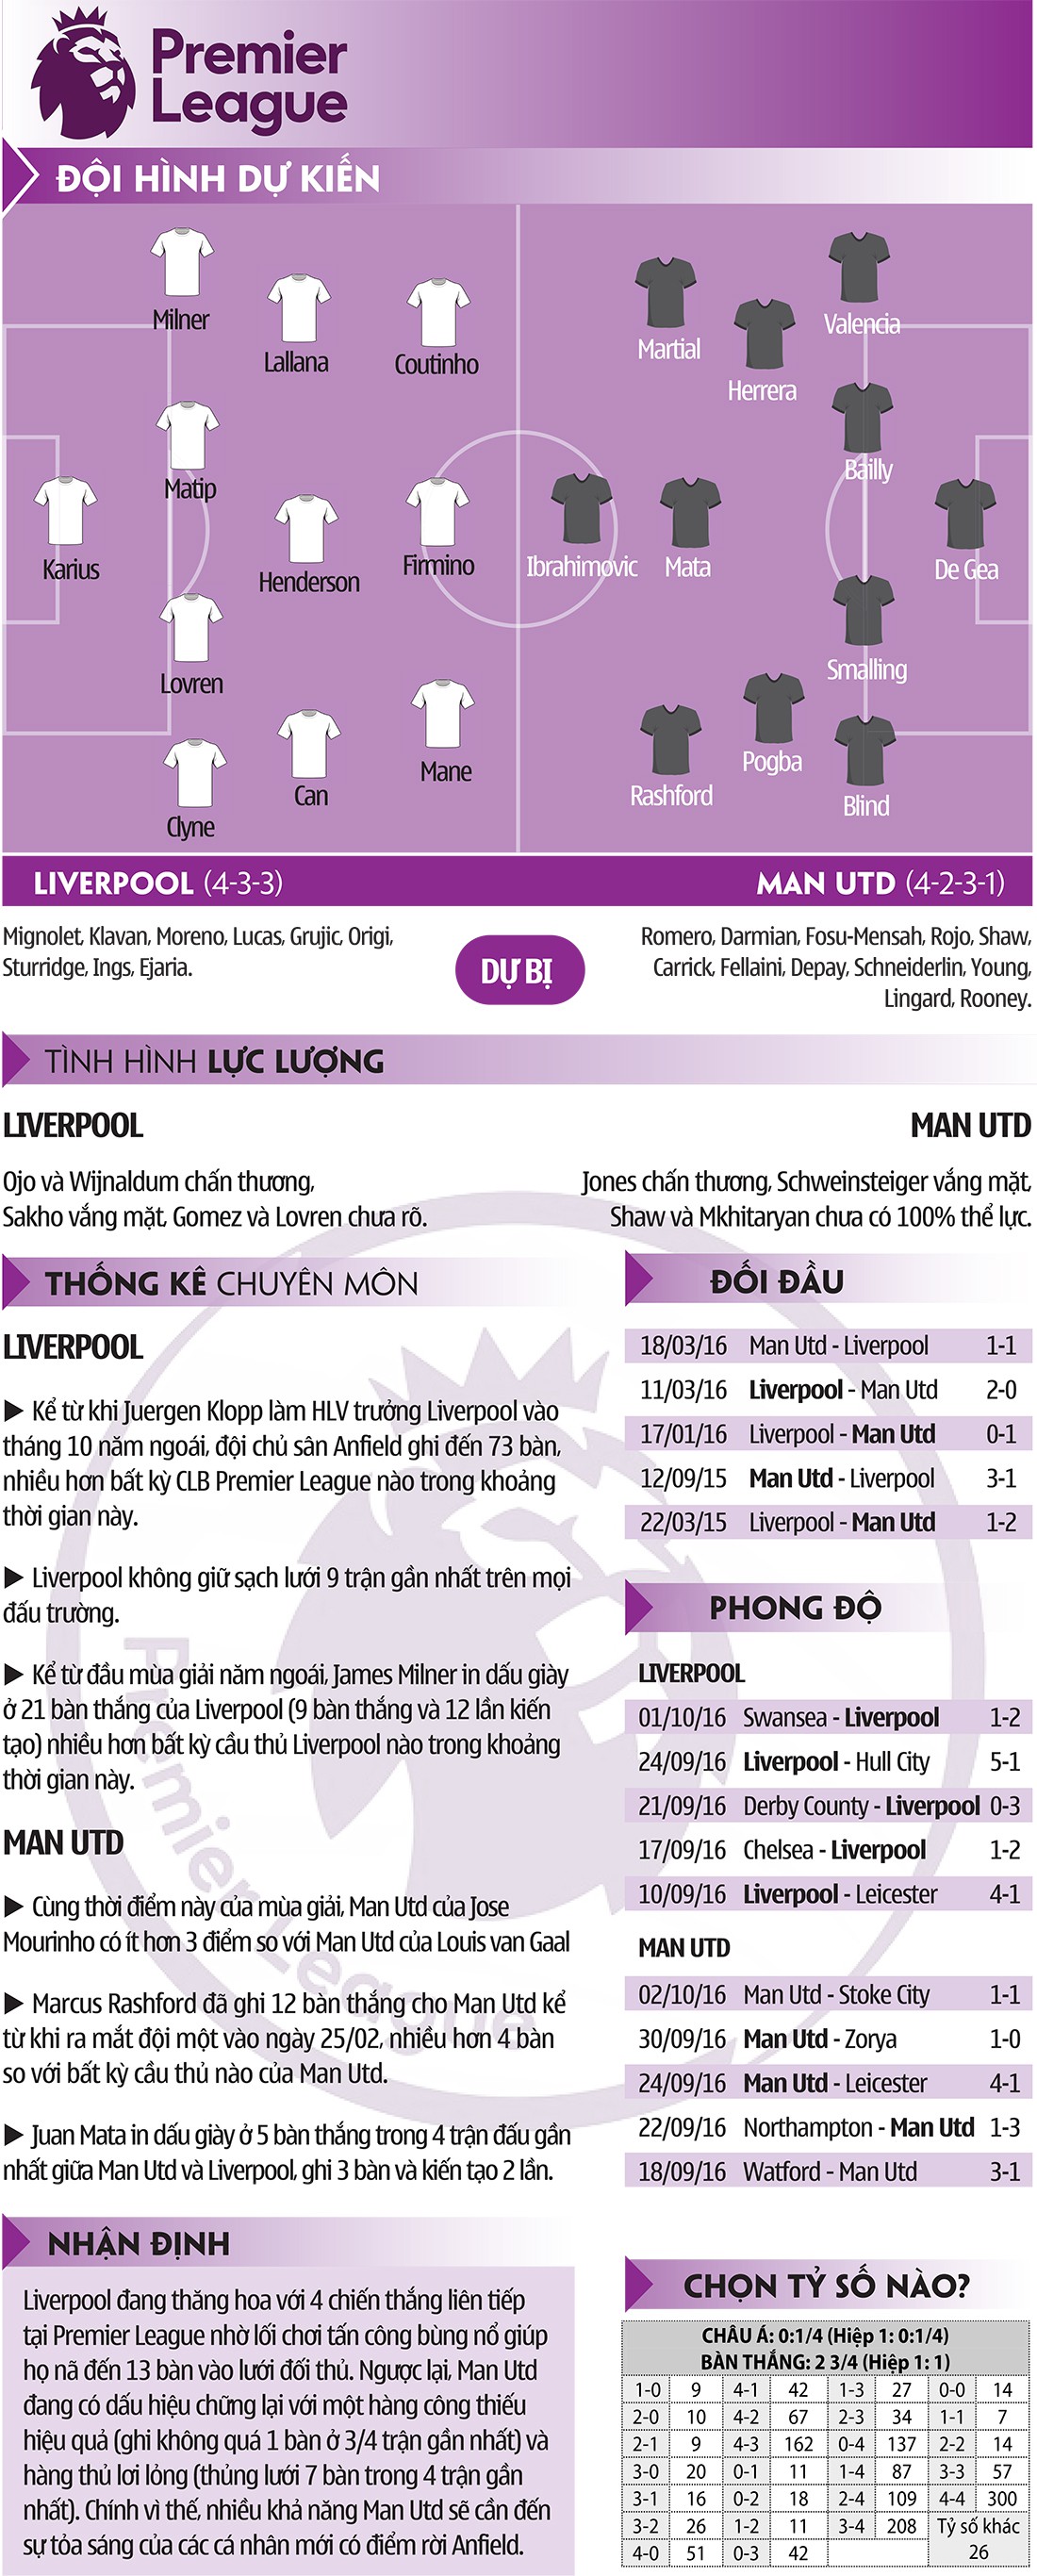 Liverpool-Man Utd: Niềm tin đặt nơi Marcus Rashford